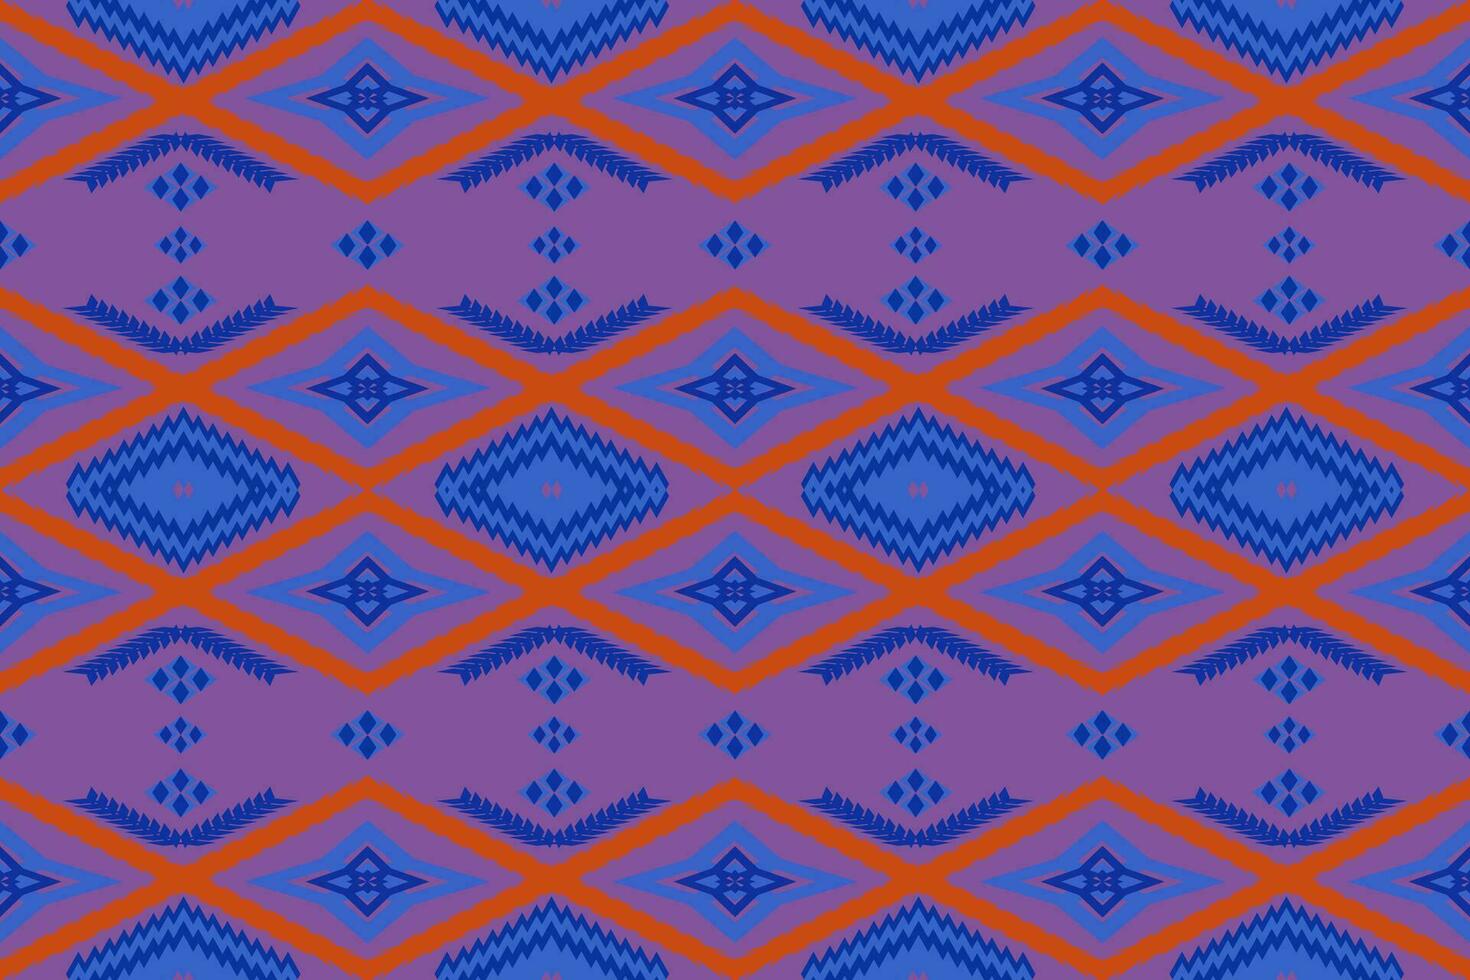 geométrico patchwork étnico padronizar vetor para tribal boho design,papel de parede,embrulho,moda,tapete,vestuário,malhas,batik,ilustração.étnica abstrato ikat.